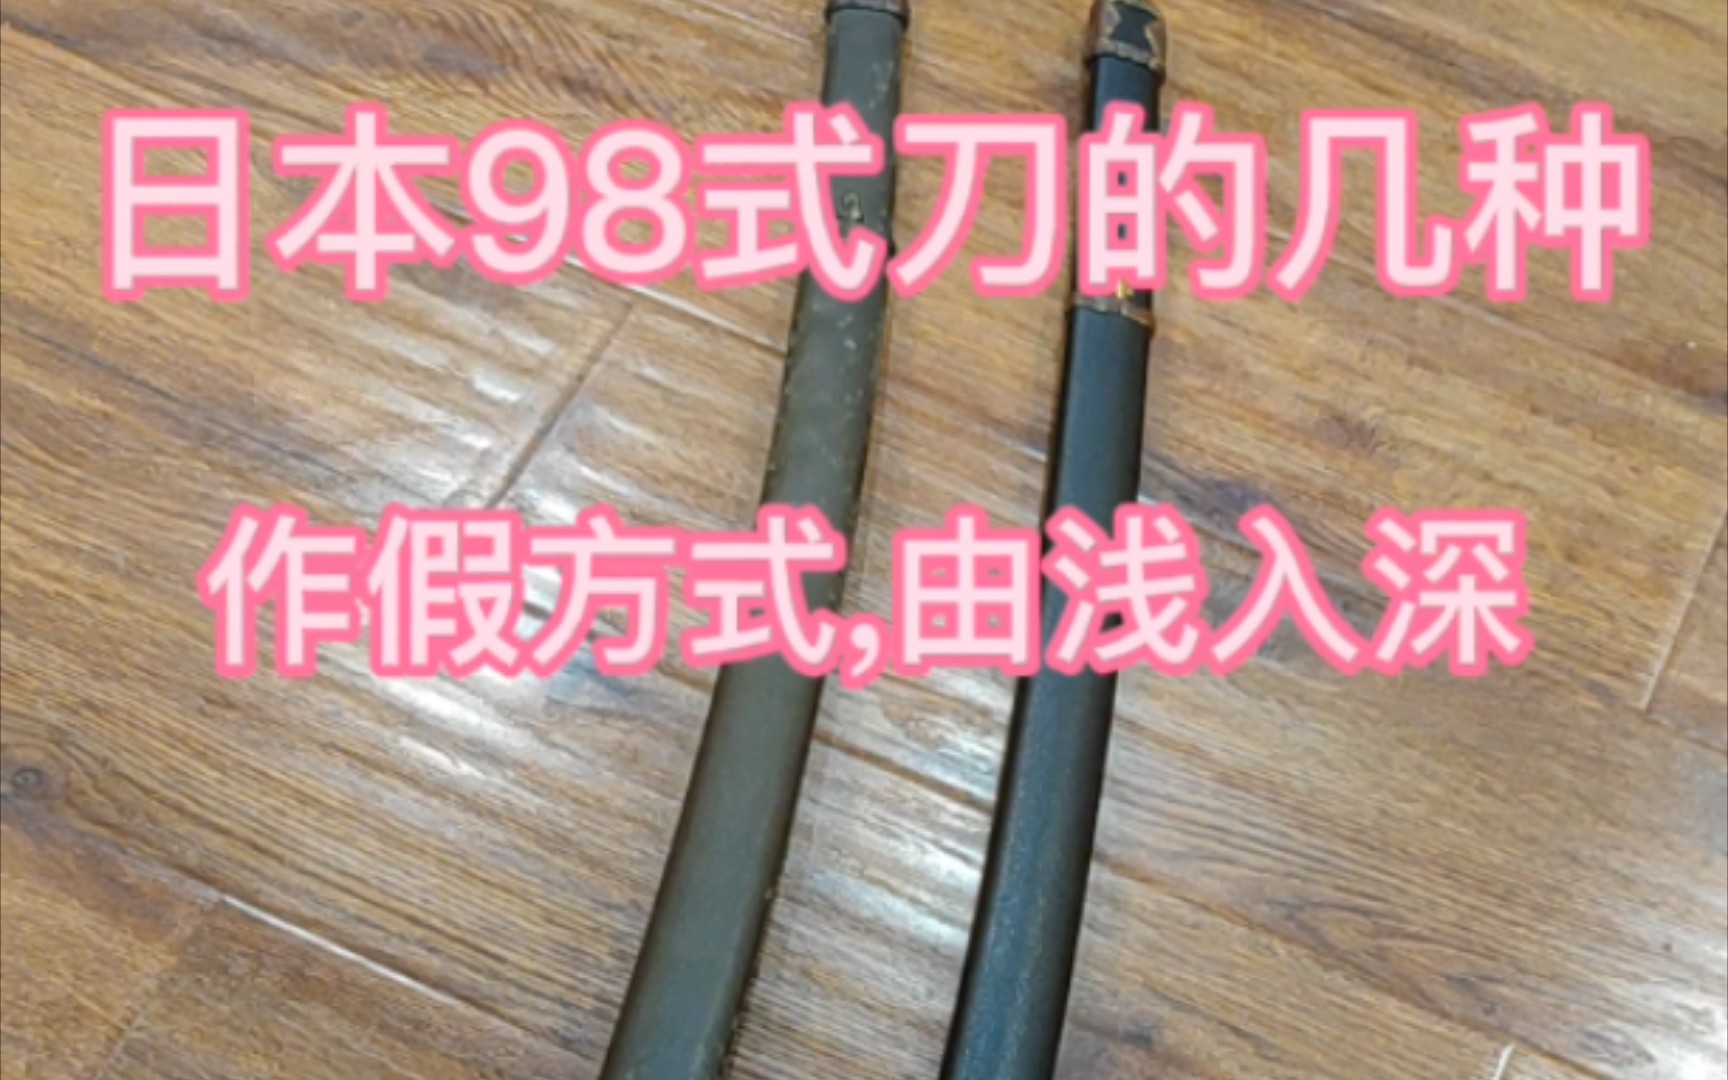 日军98式军刀的几种作假方式。